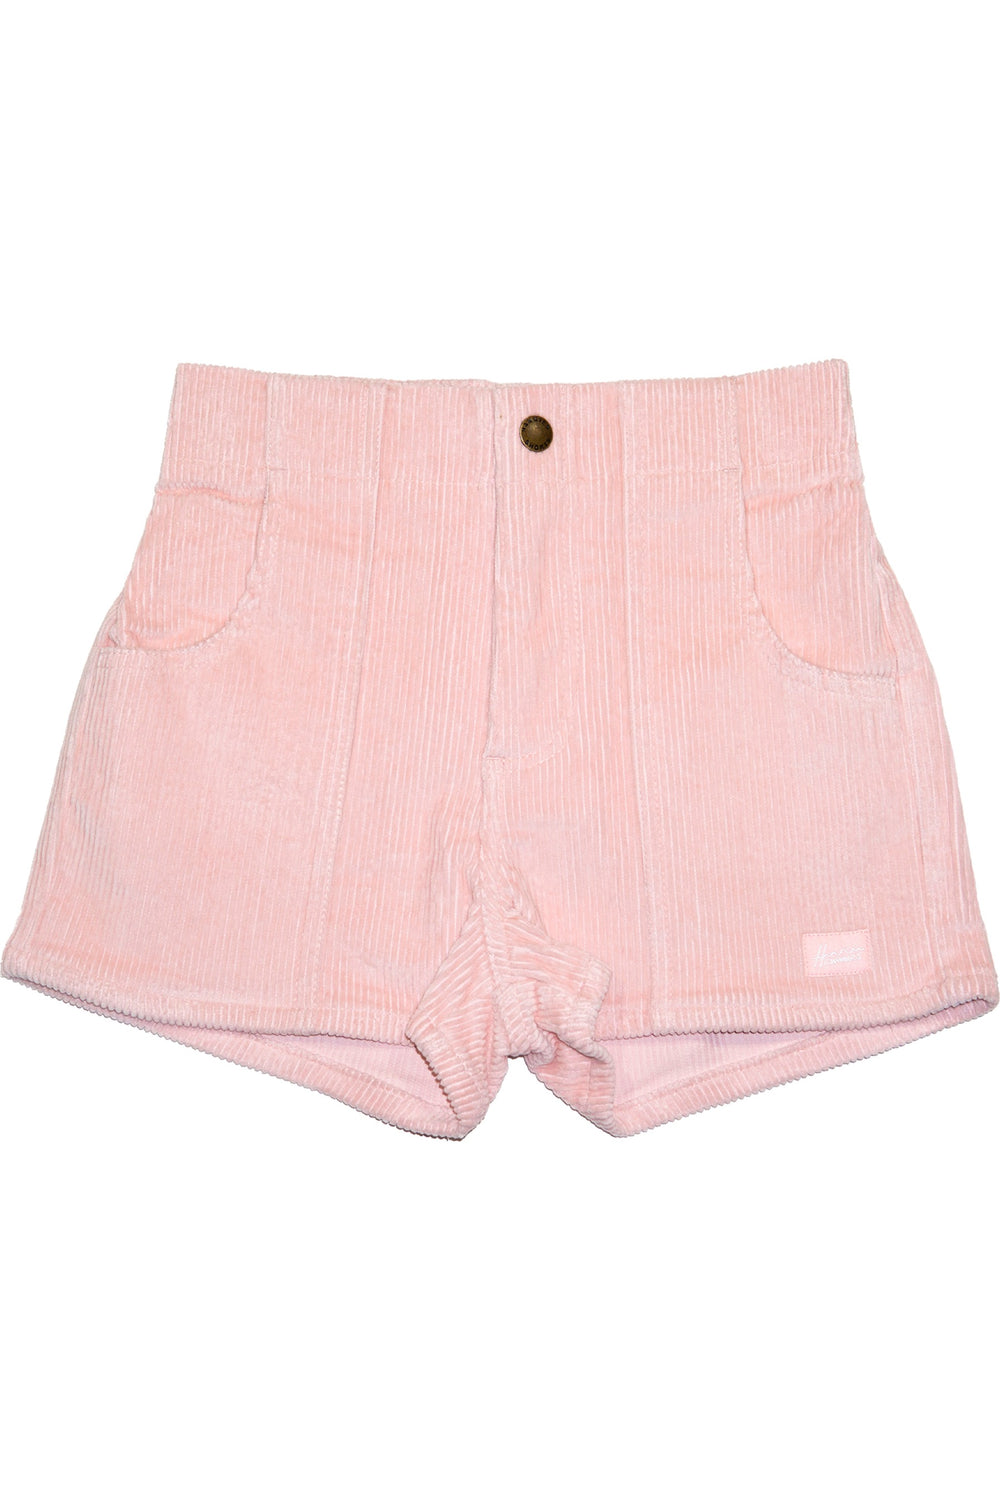 Powder Pink Hammies Shorts